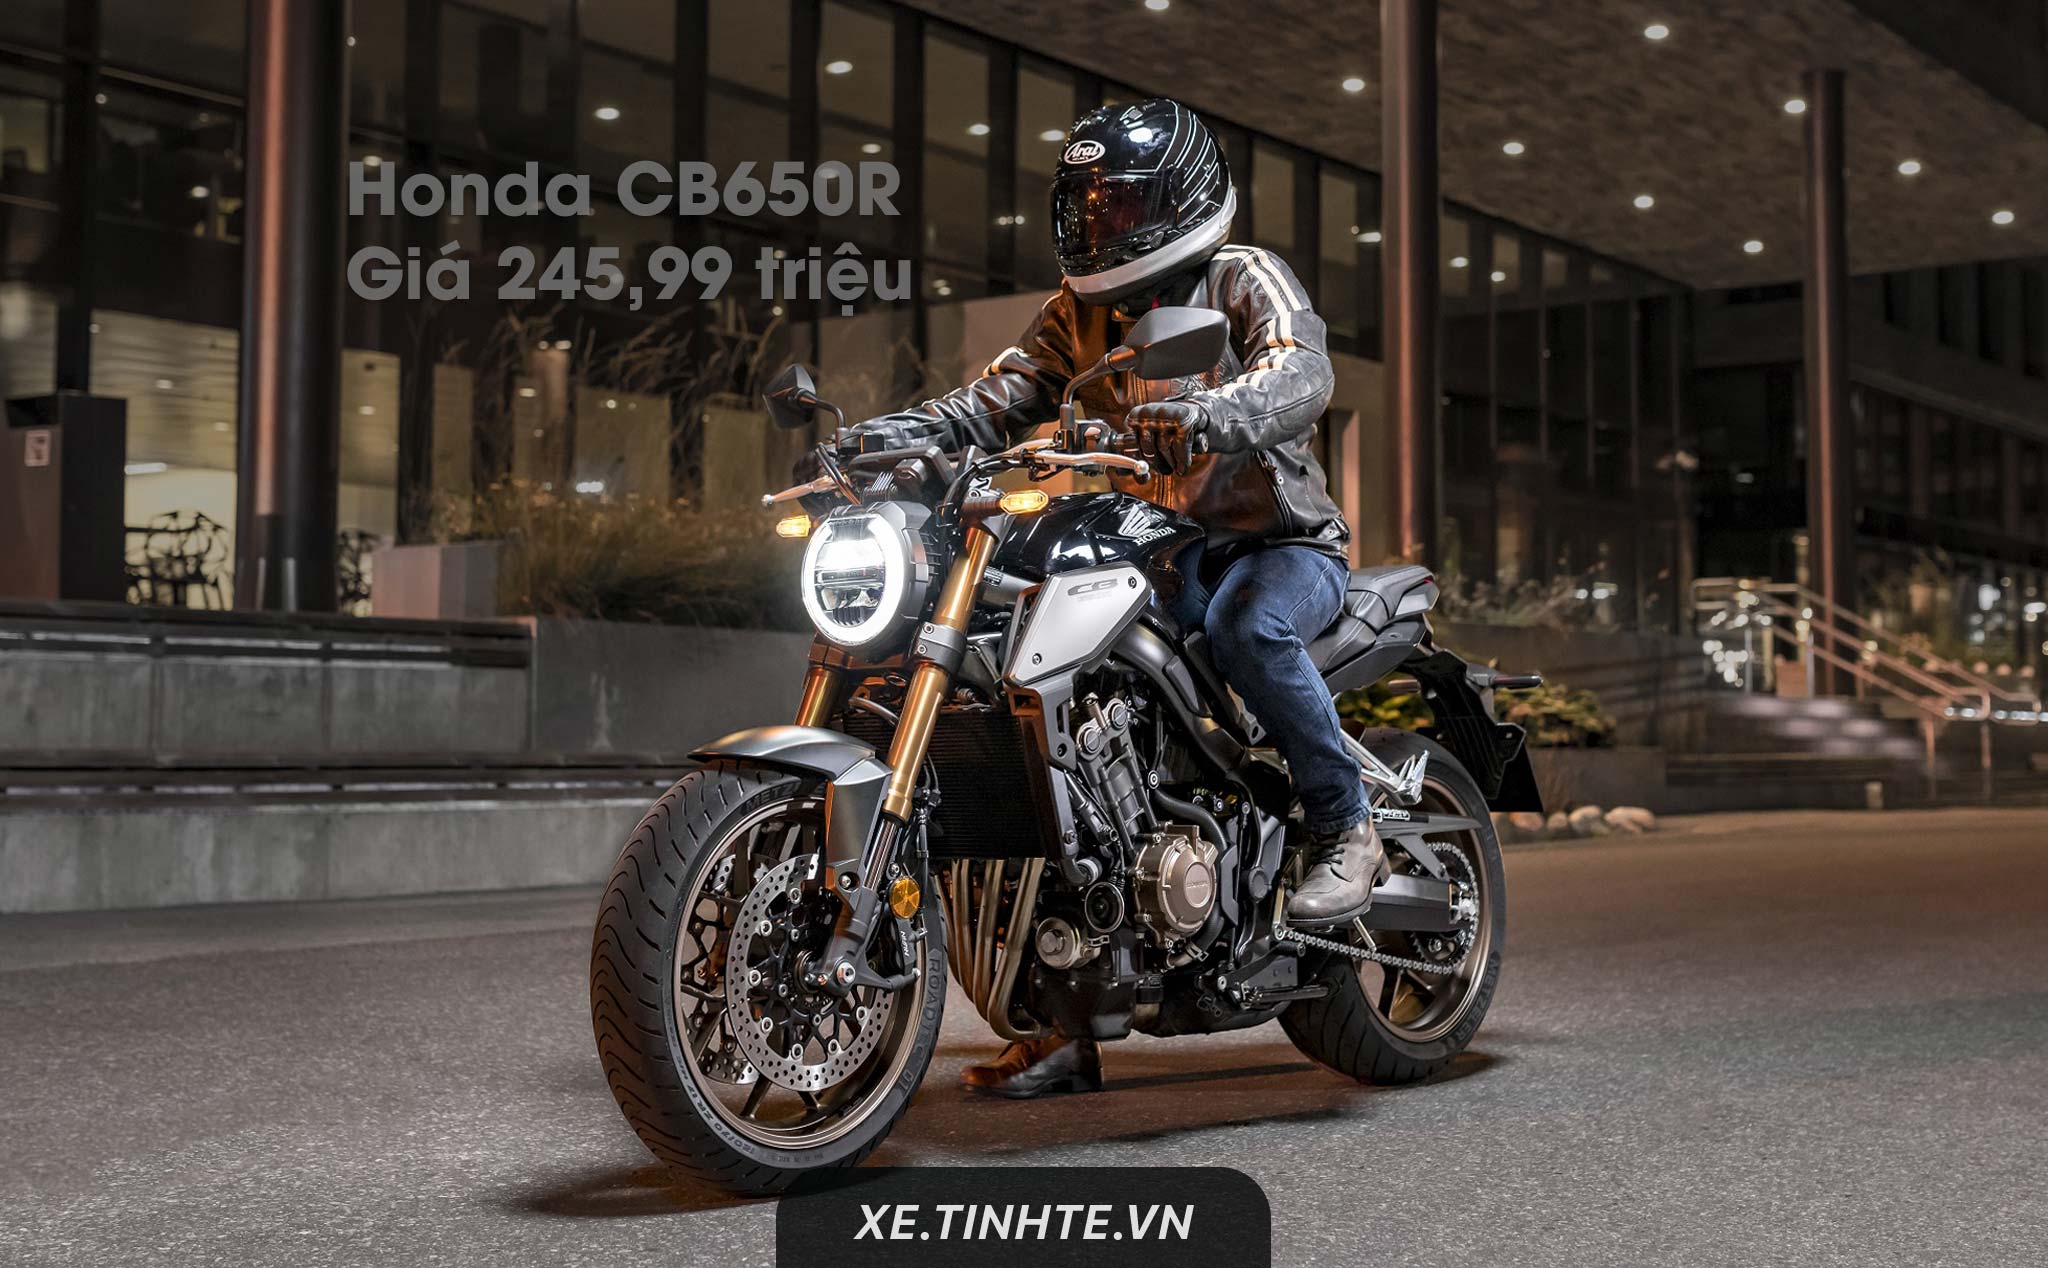 Honda CB650R bắt đầu được bán chính hãng giá 245,99 triệu; nhập khẩu từ Thái Lan